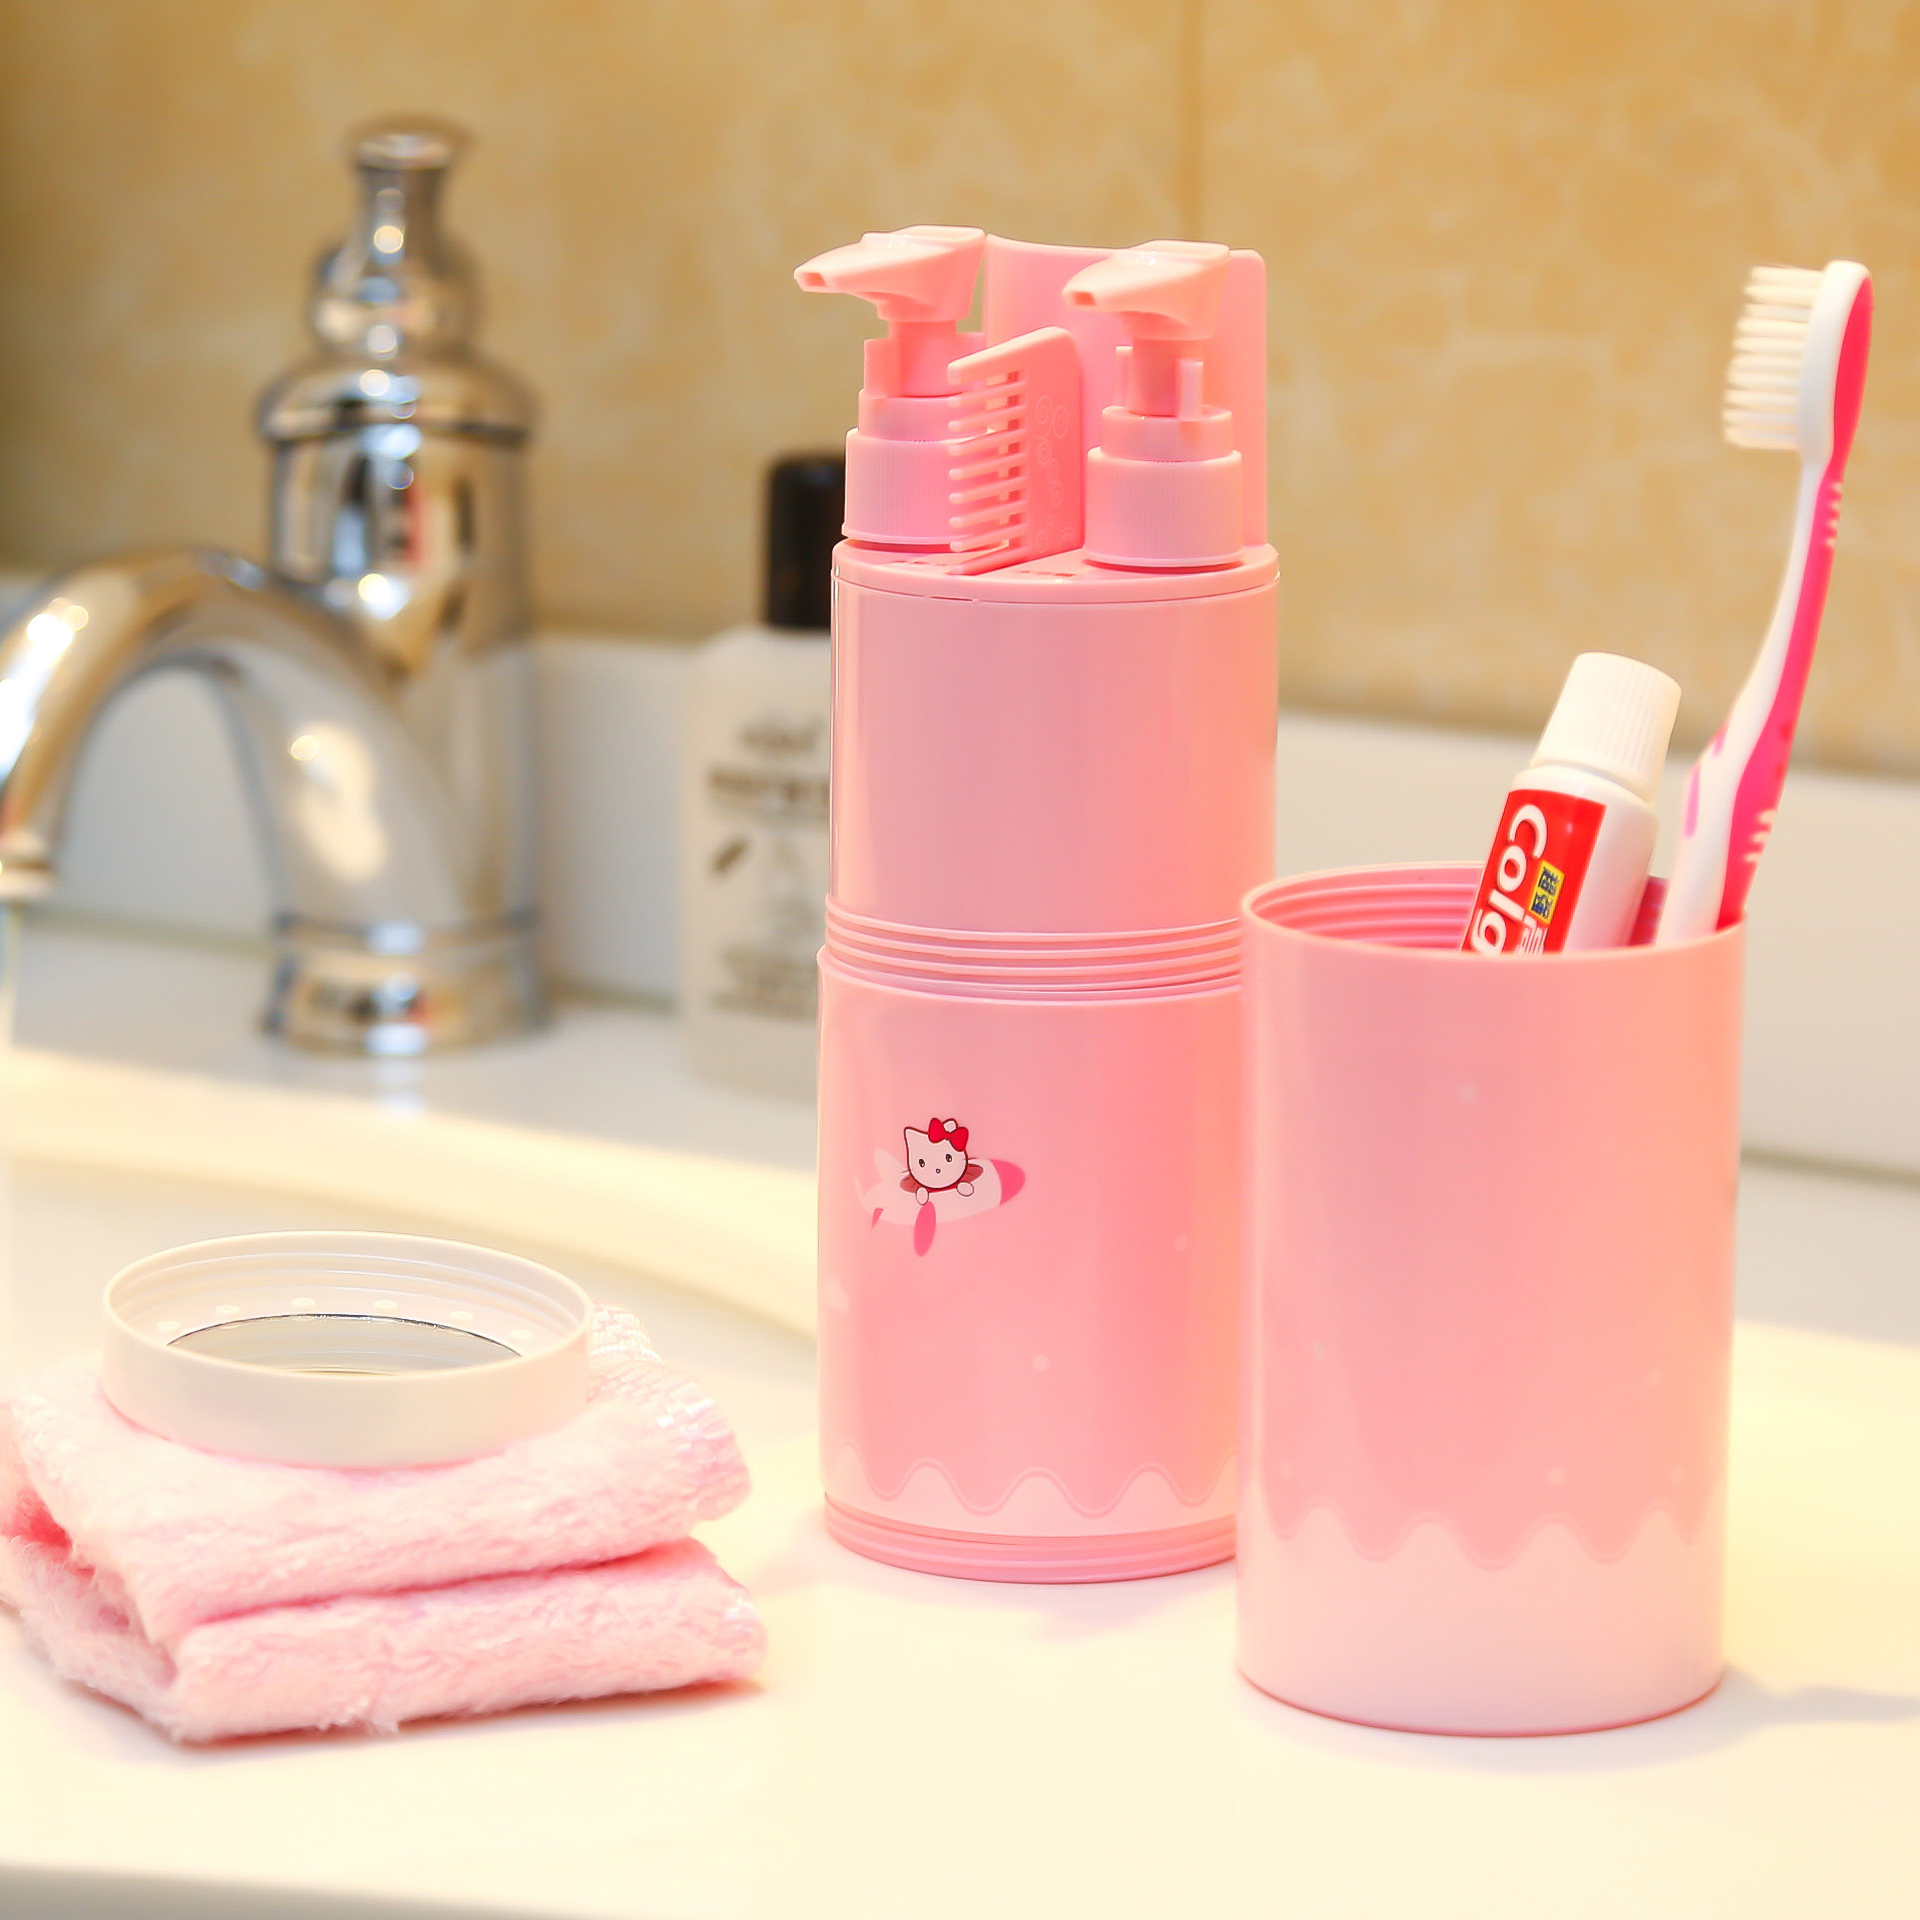 旅行洗漱杯牙刷牙膏便携套装 出差牙具旅游用品收纳包洗漱包女男